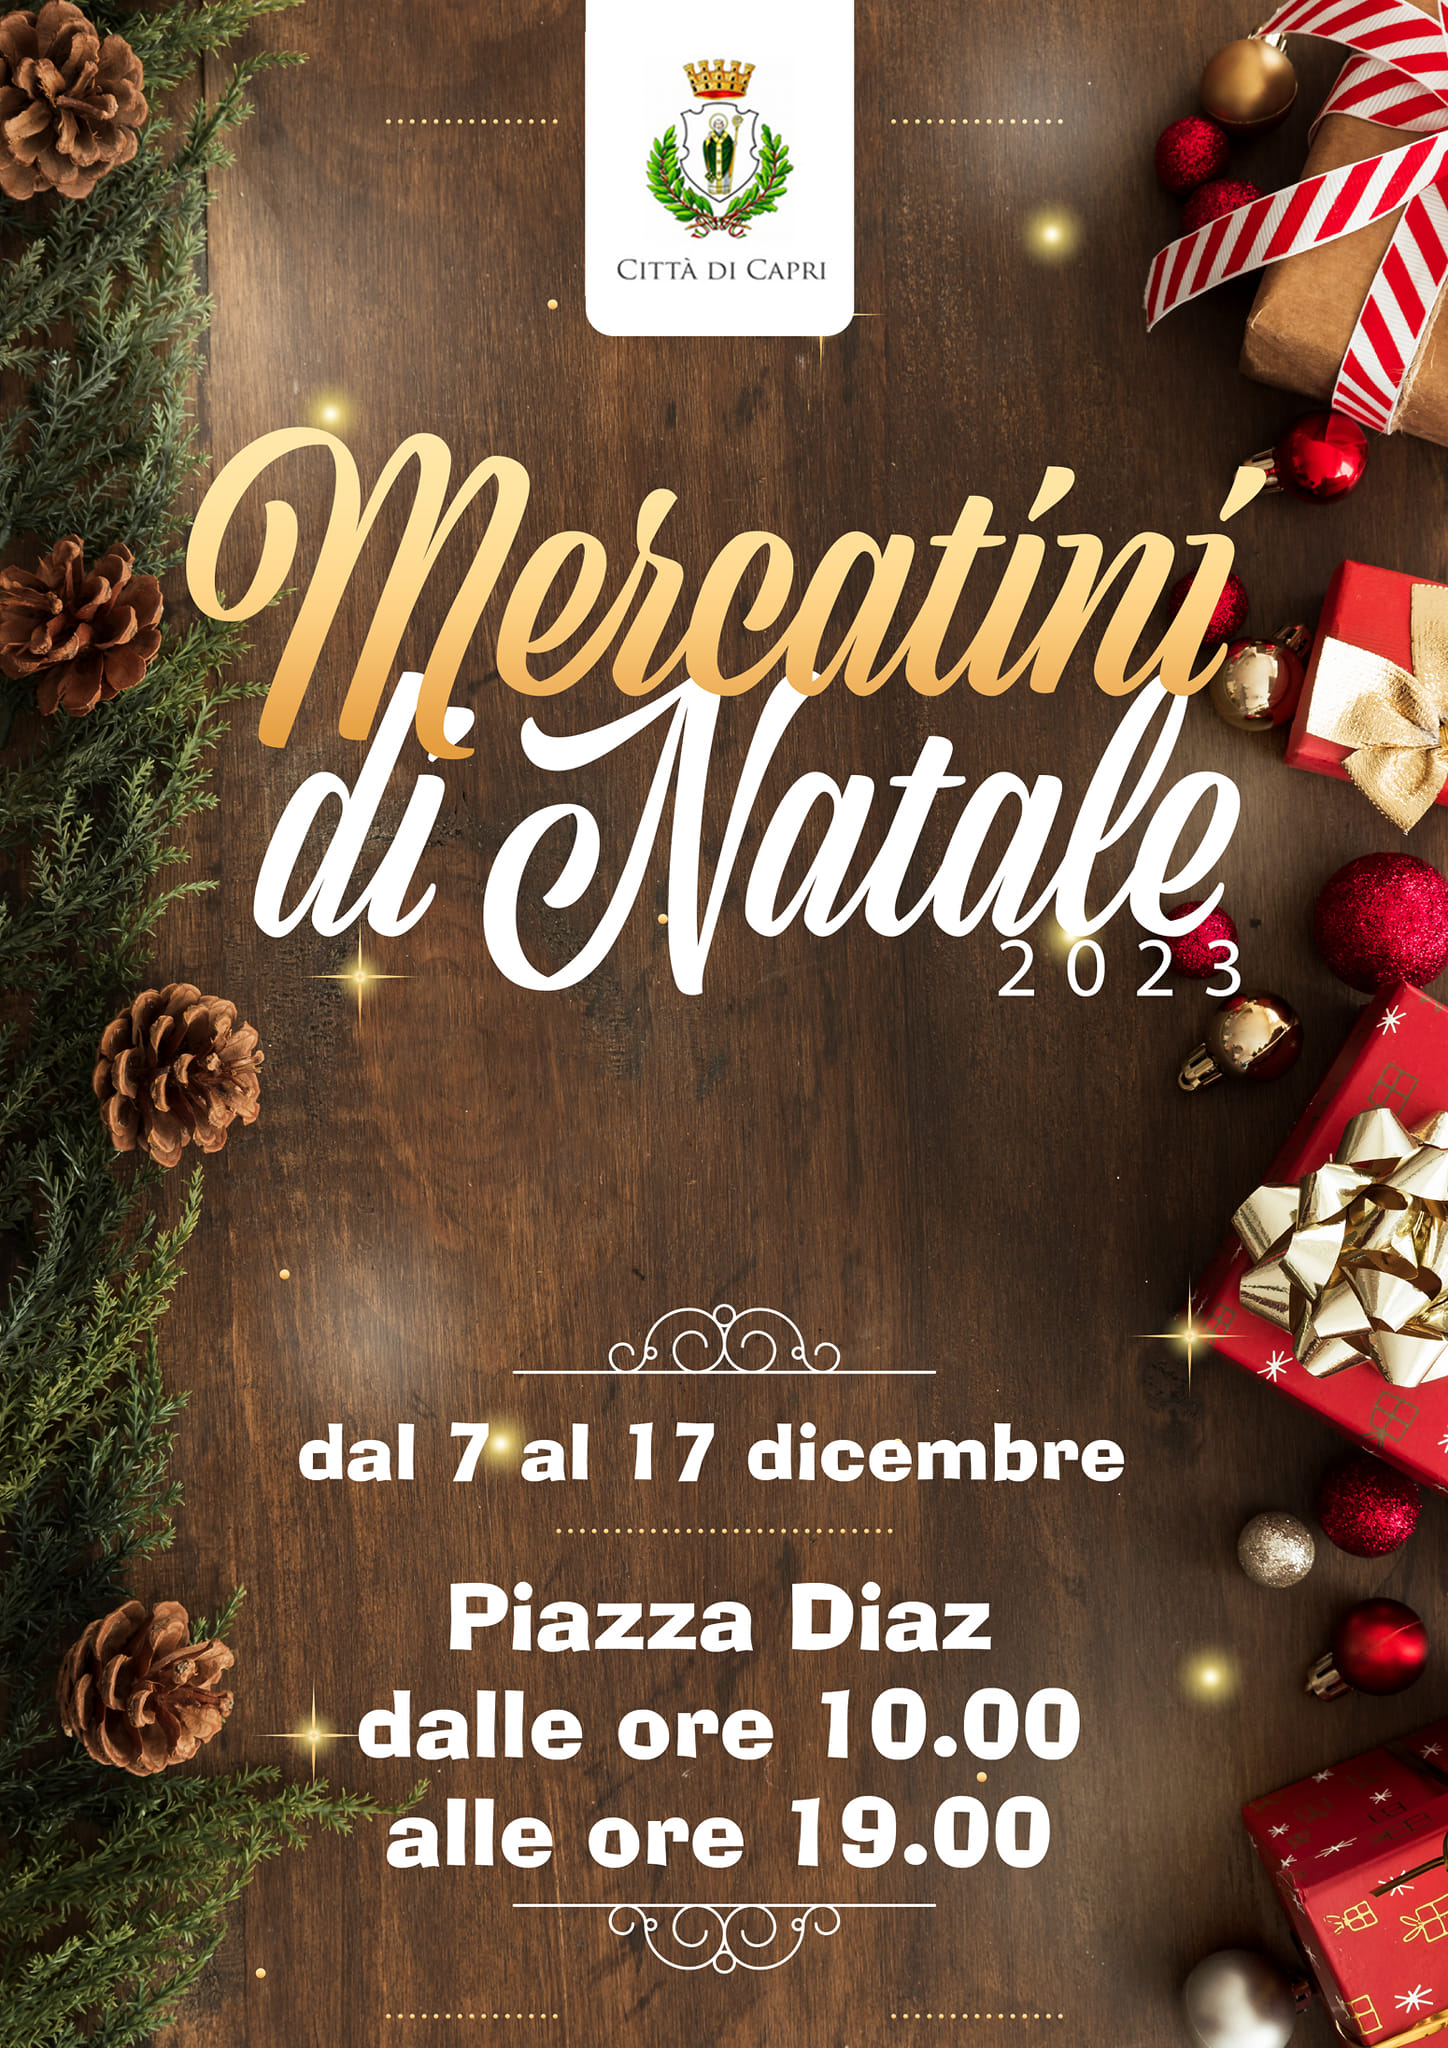 Tornano i mercatini di Natale a Capri dal 7 al 17 dicembre